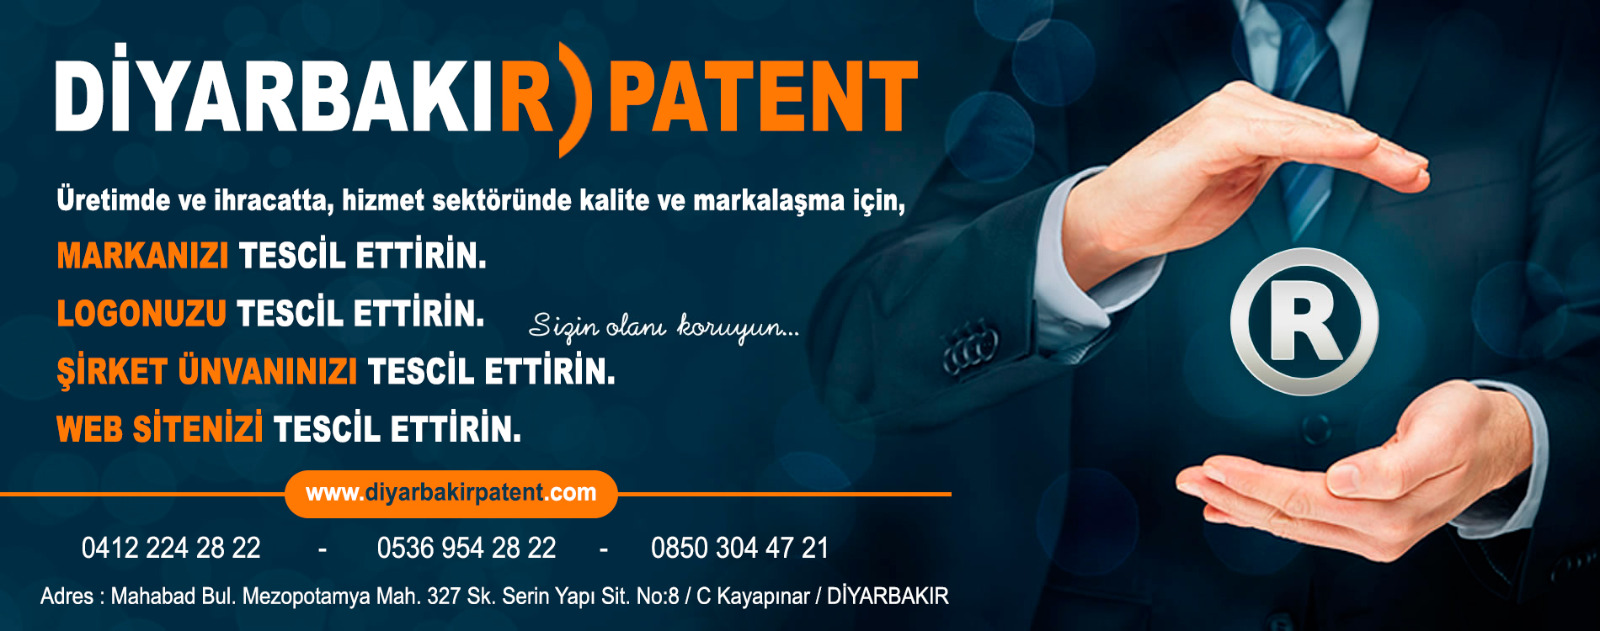 Derecik Hakkari Marka Patent Firması 0412 224 28 22